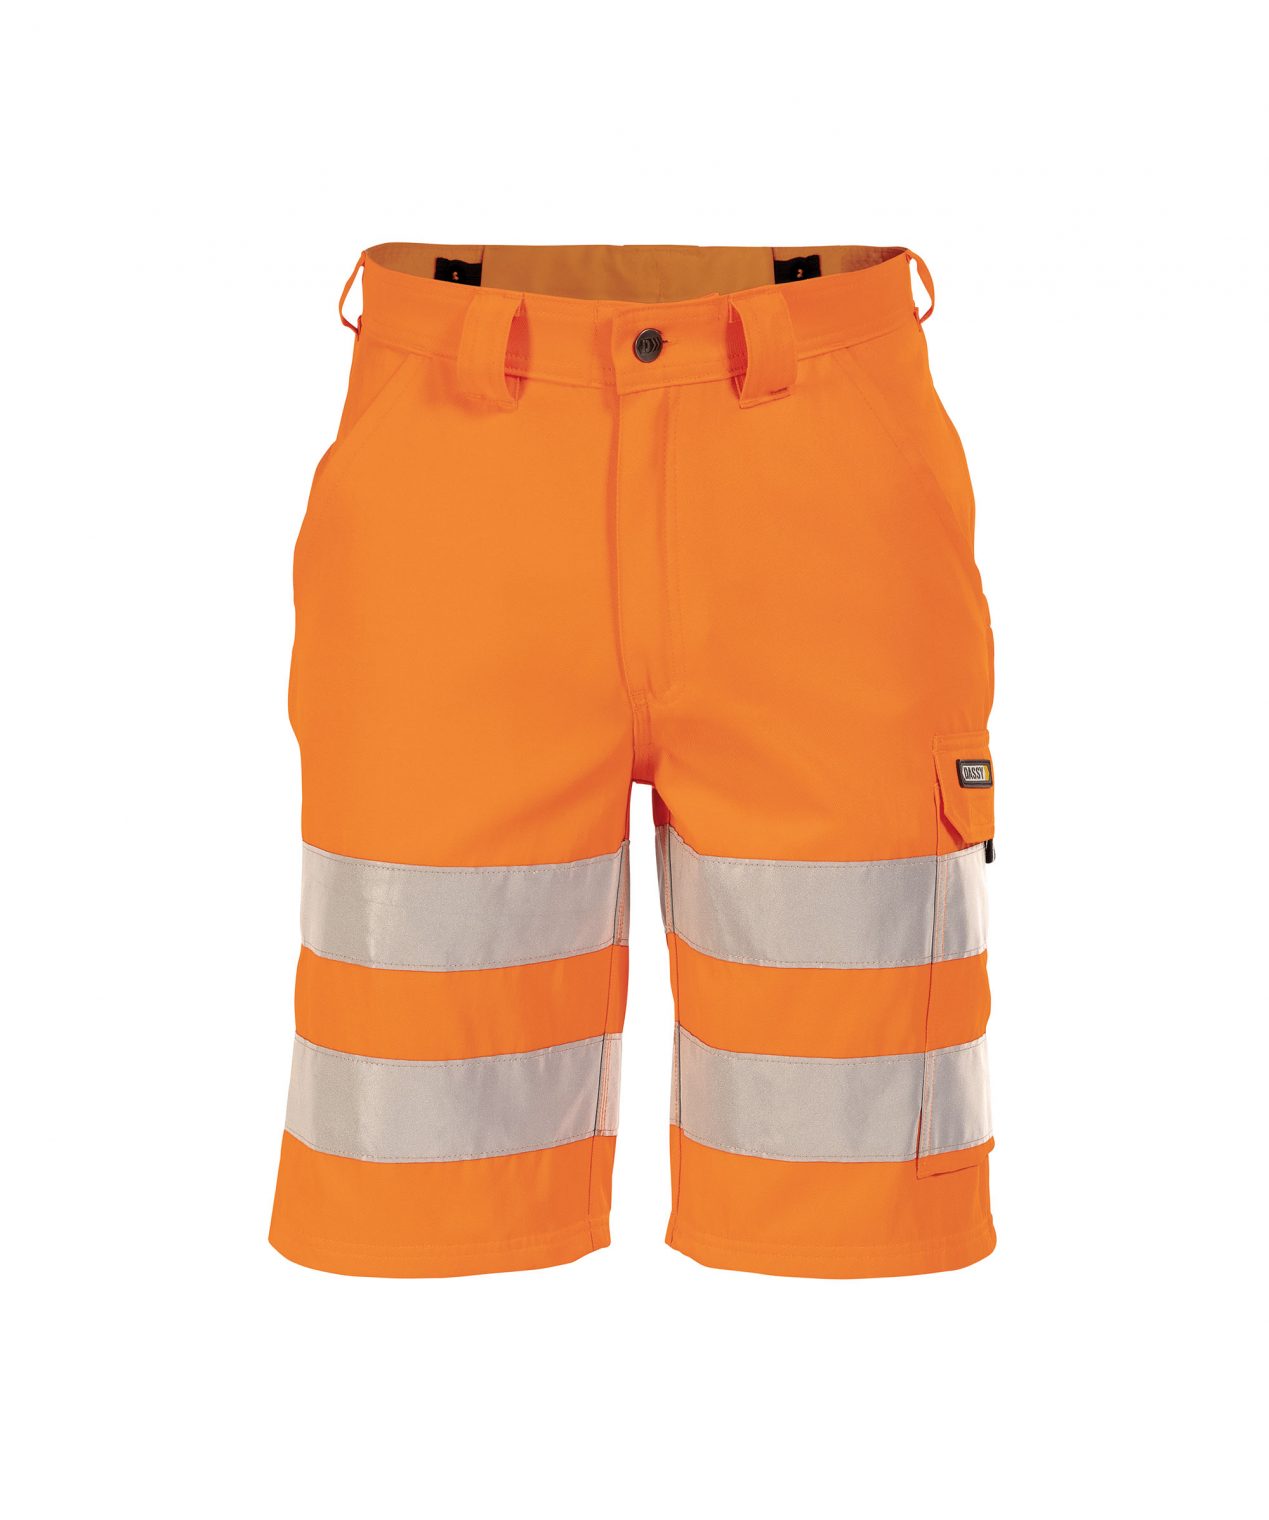 idaho high visibility work shorts fluo orange front